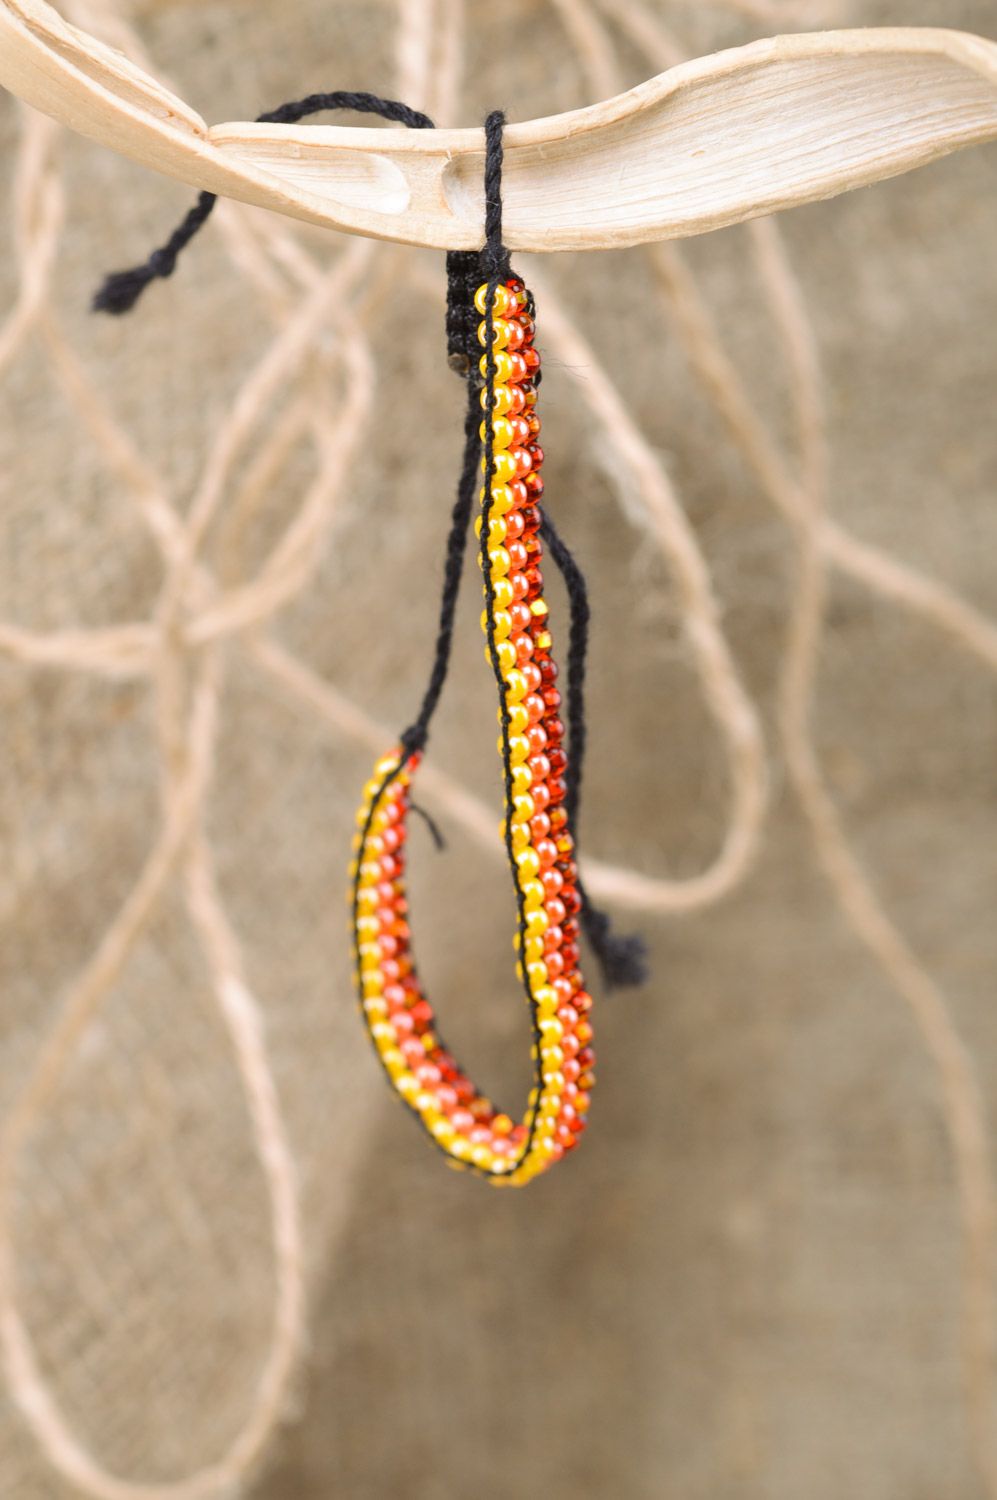 Тонкий плетеный браслет на руку из бисера ручной работы трехцветный для девушки фото 1